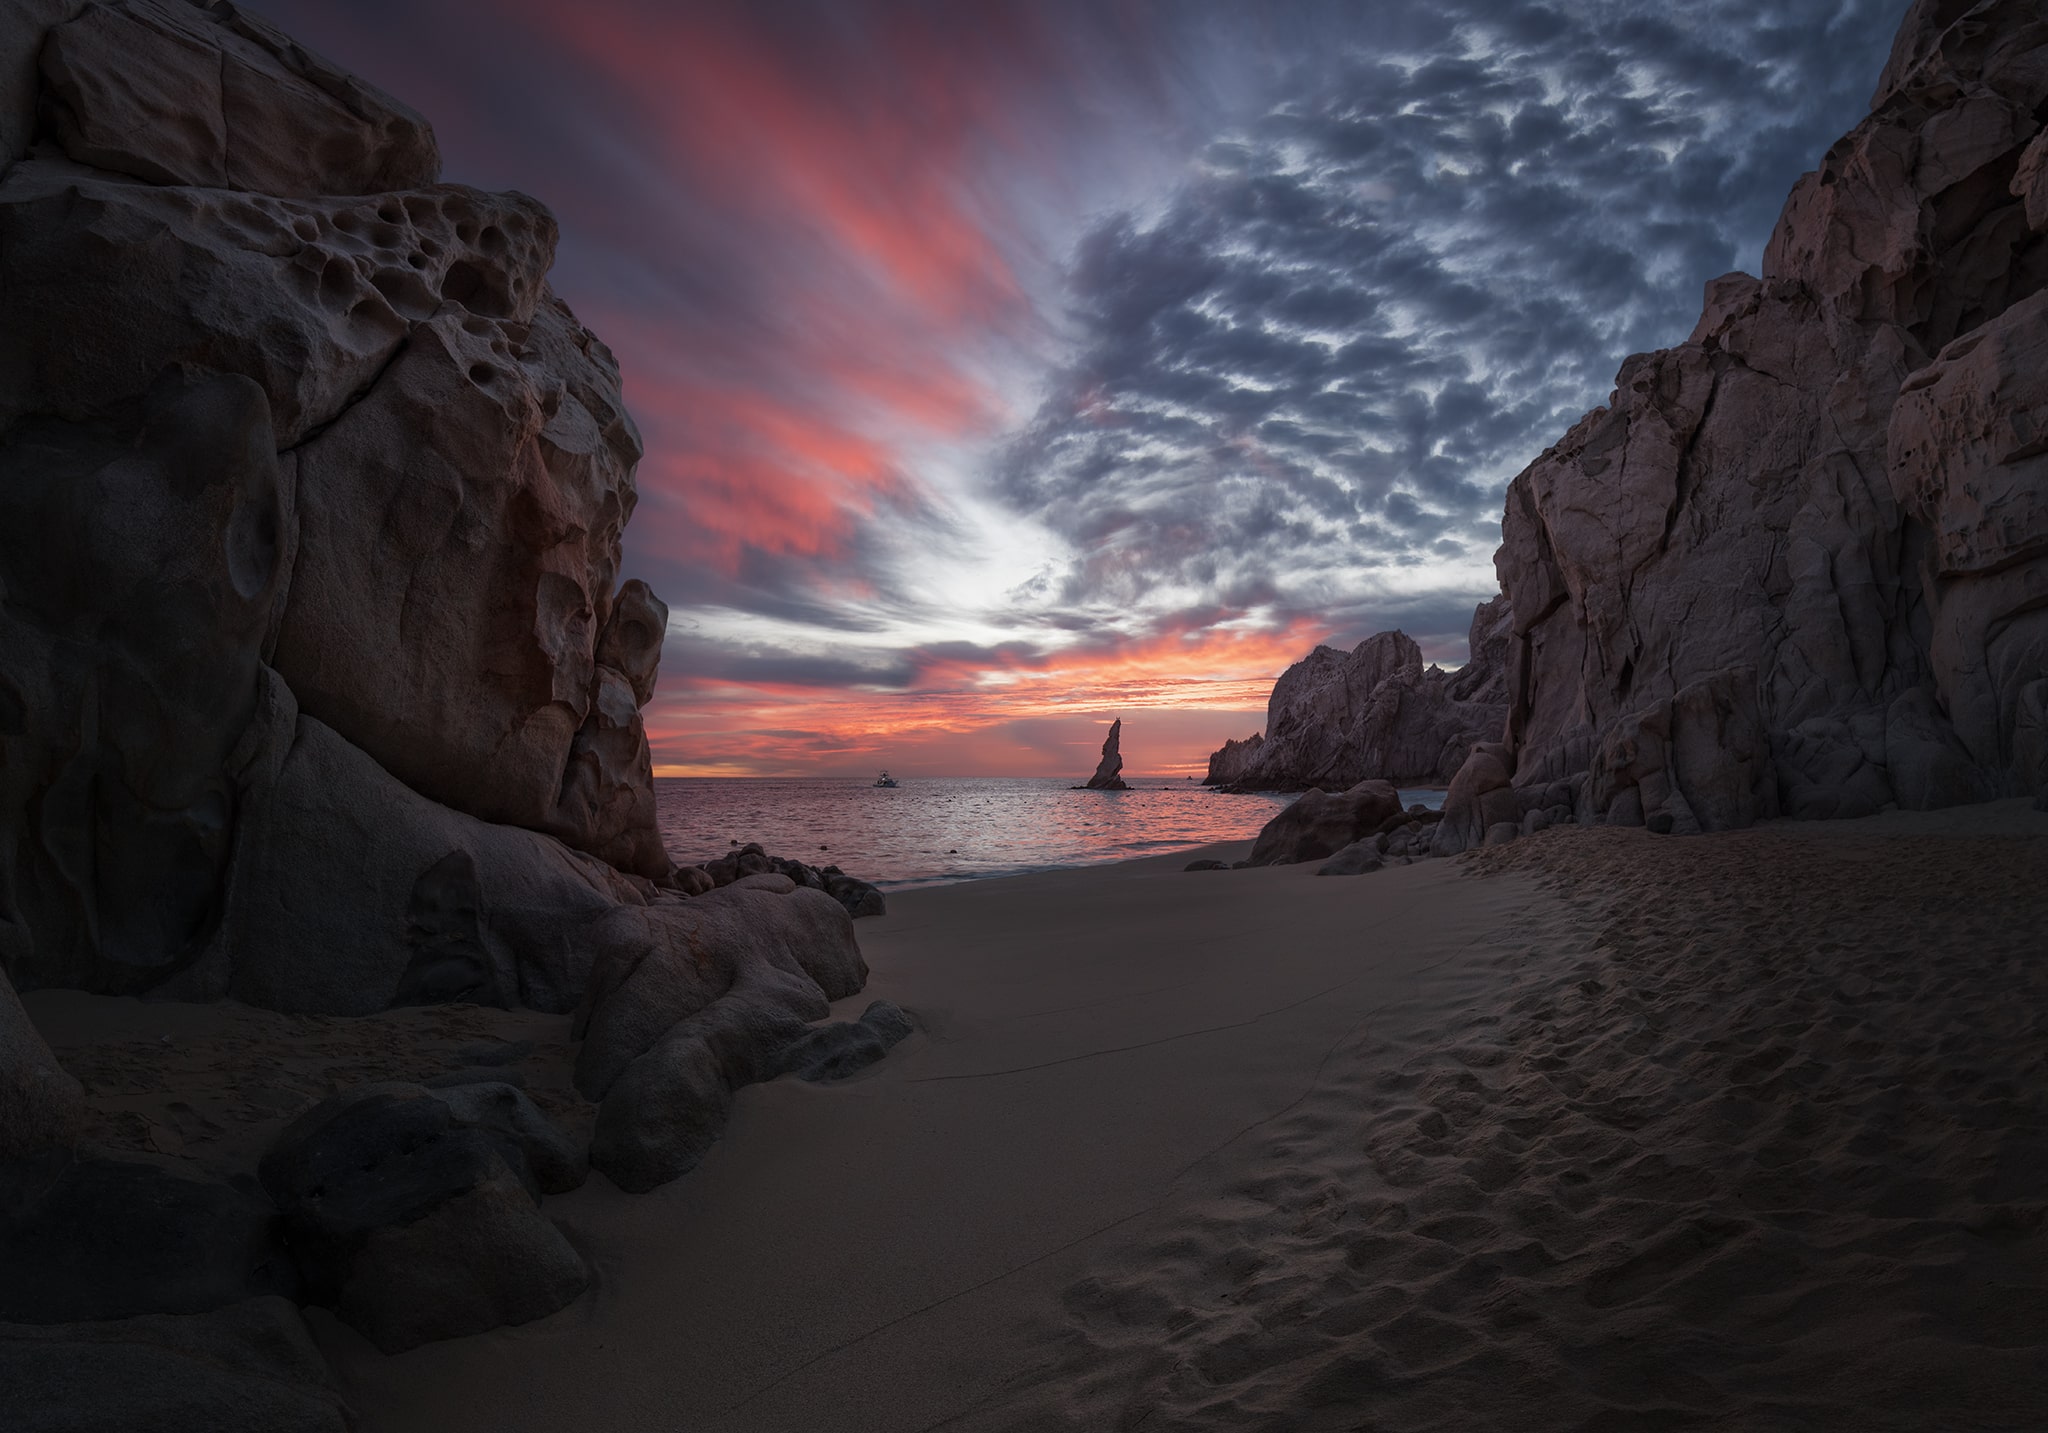 Cabo colorful sunrise picture